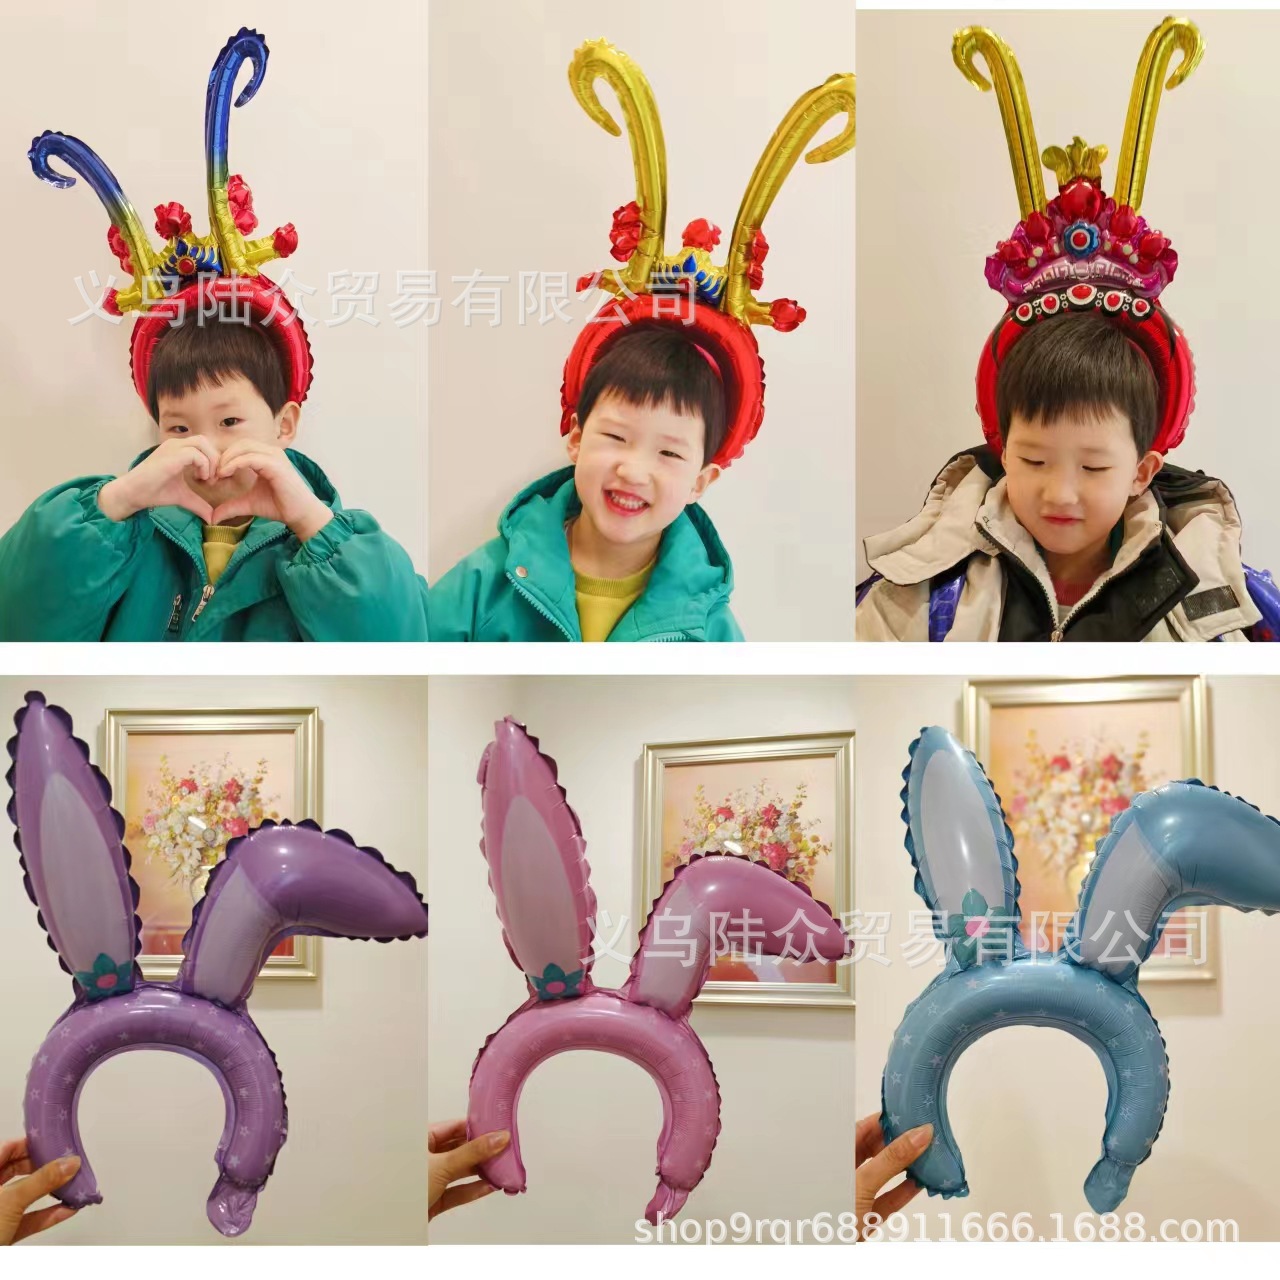 新款歪耳朵兔子发箍气球蛋糕生日派对装饰拍照道具儿童玩具气球